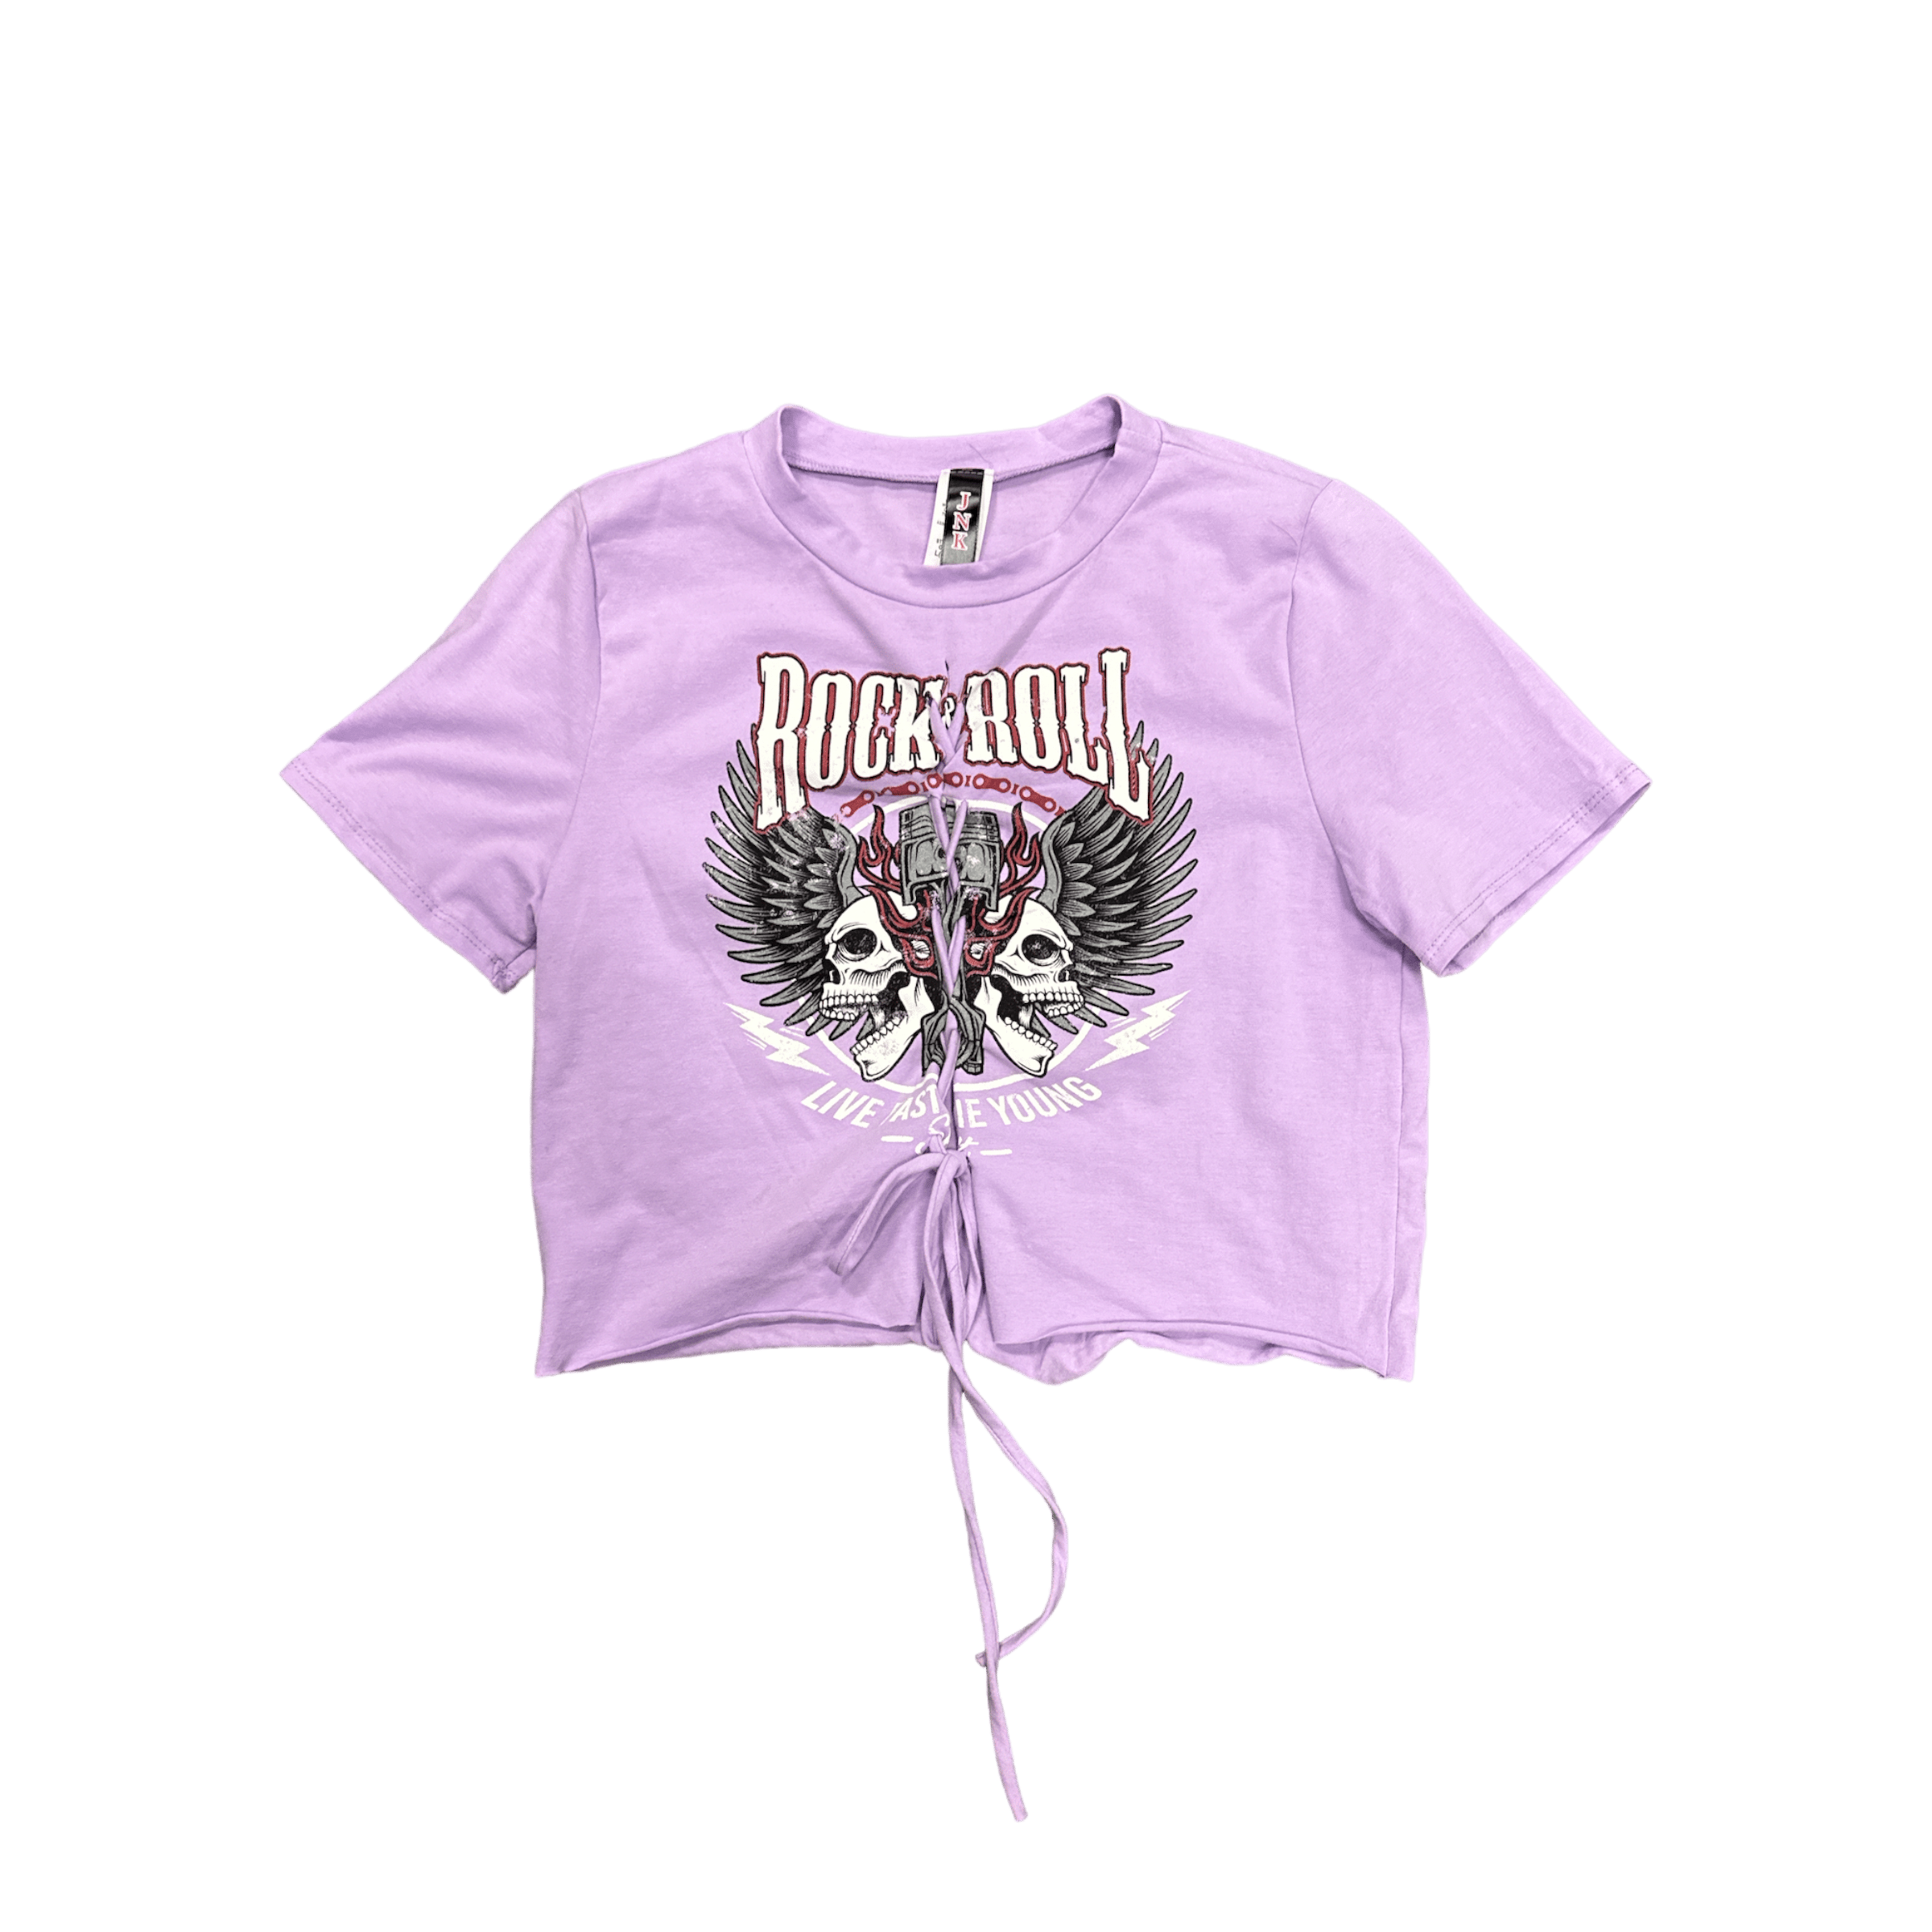 JNk T SHIRT Lavender Rock-n-roll crop shirt